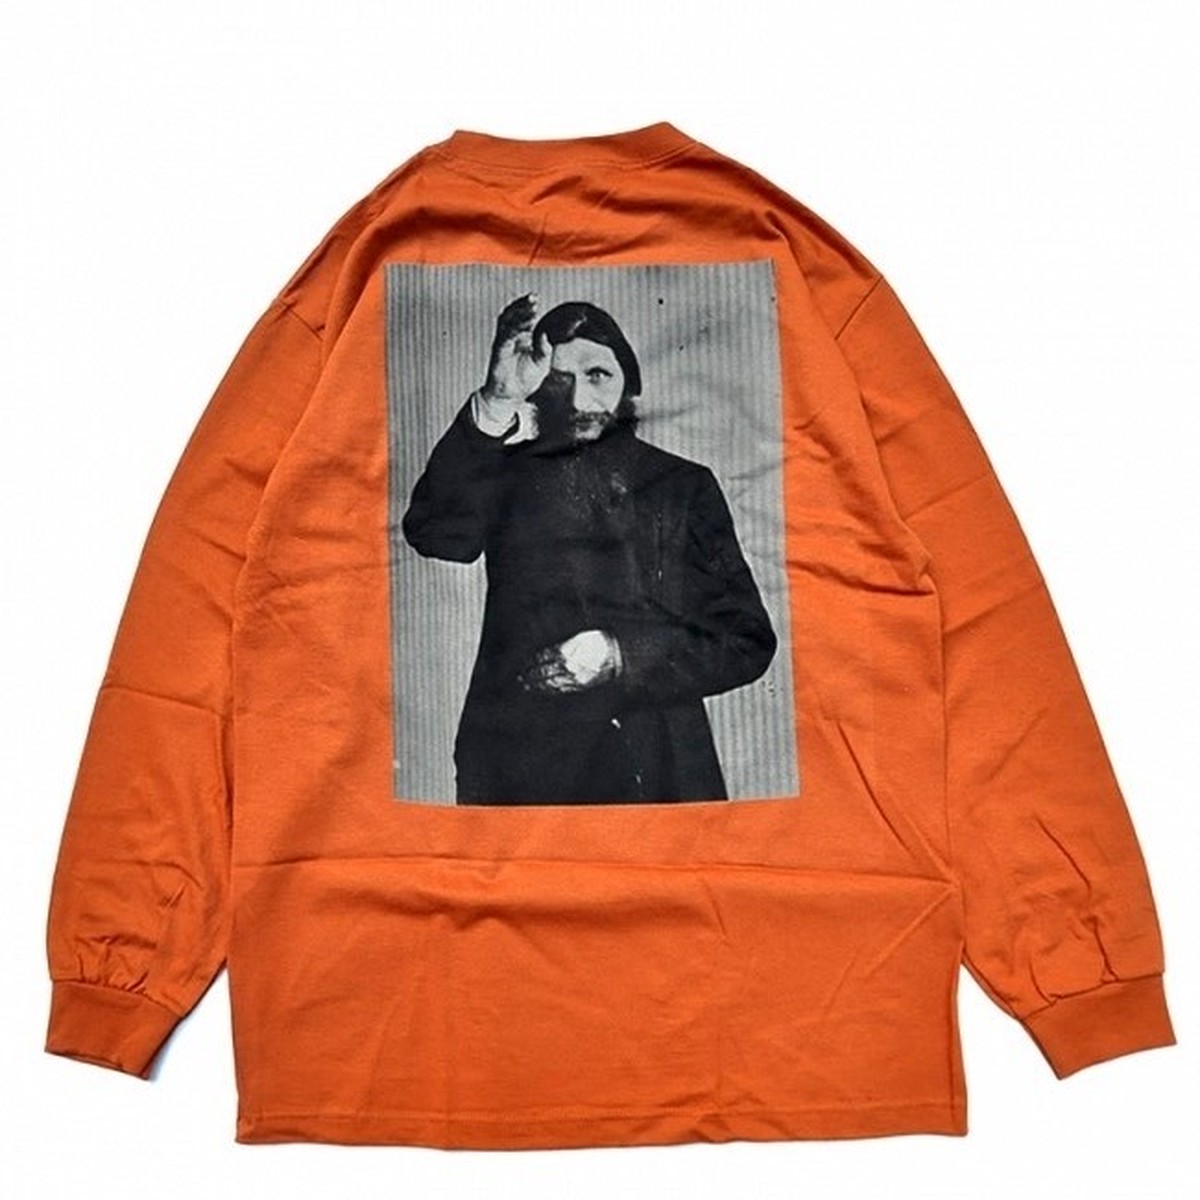 再入荷 Theories Rasputin Longsleeve Tee Orange セオリーズ ラスプーチン ロングスリーブ Tシャツ オレンジ Pretzels Skateboard And Culture